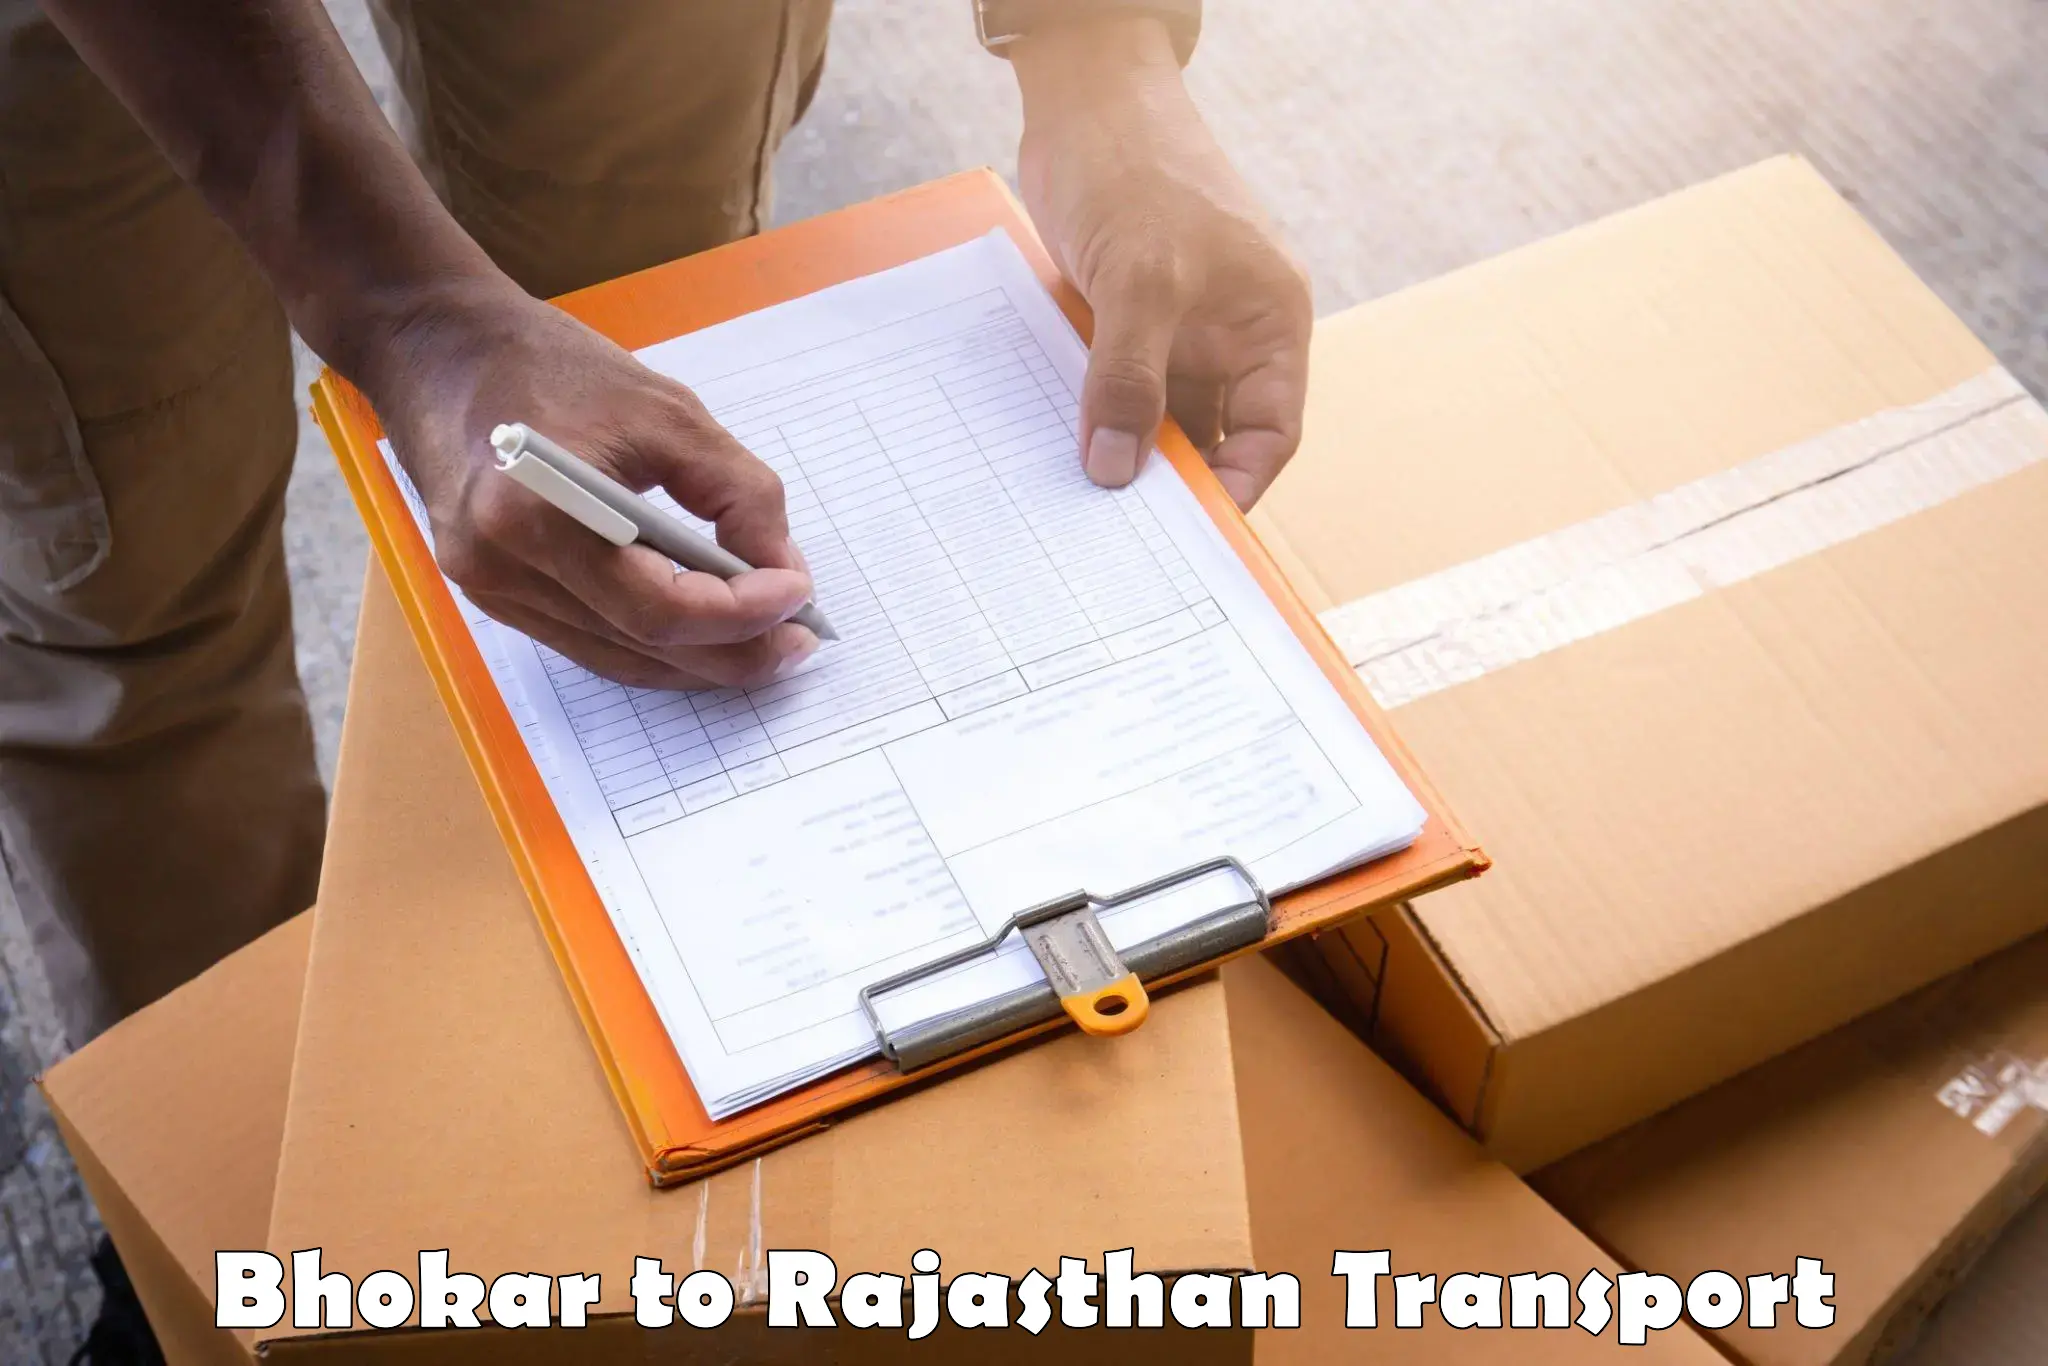 Cargo transportation services Bhokar to Jaipur